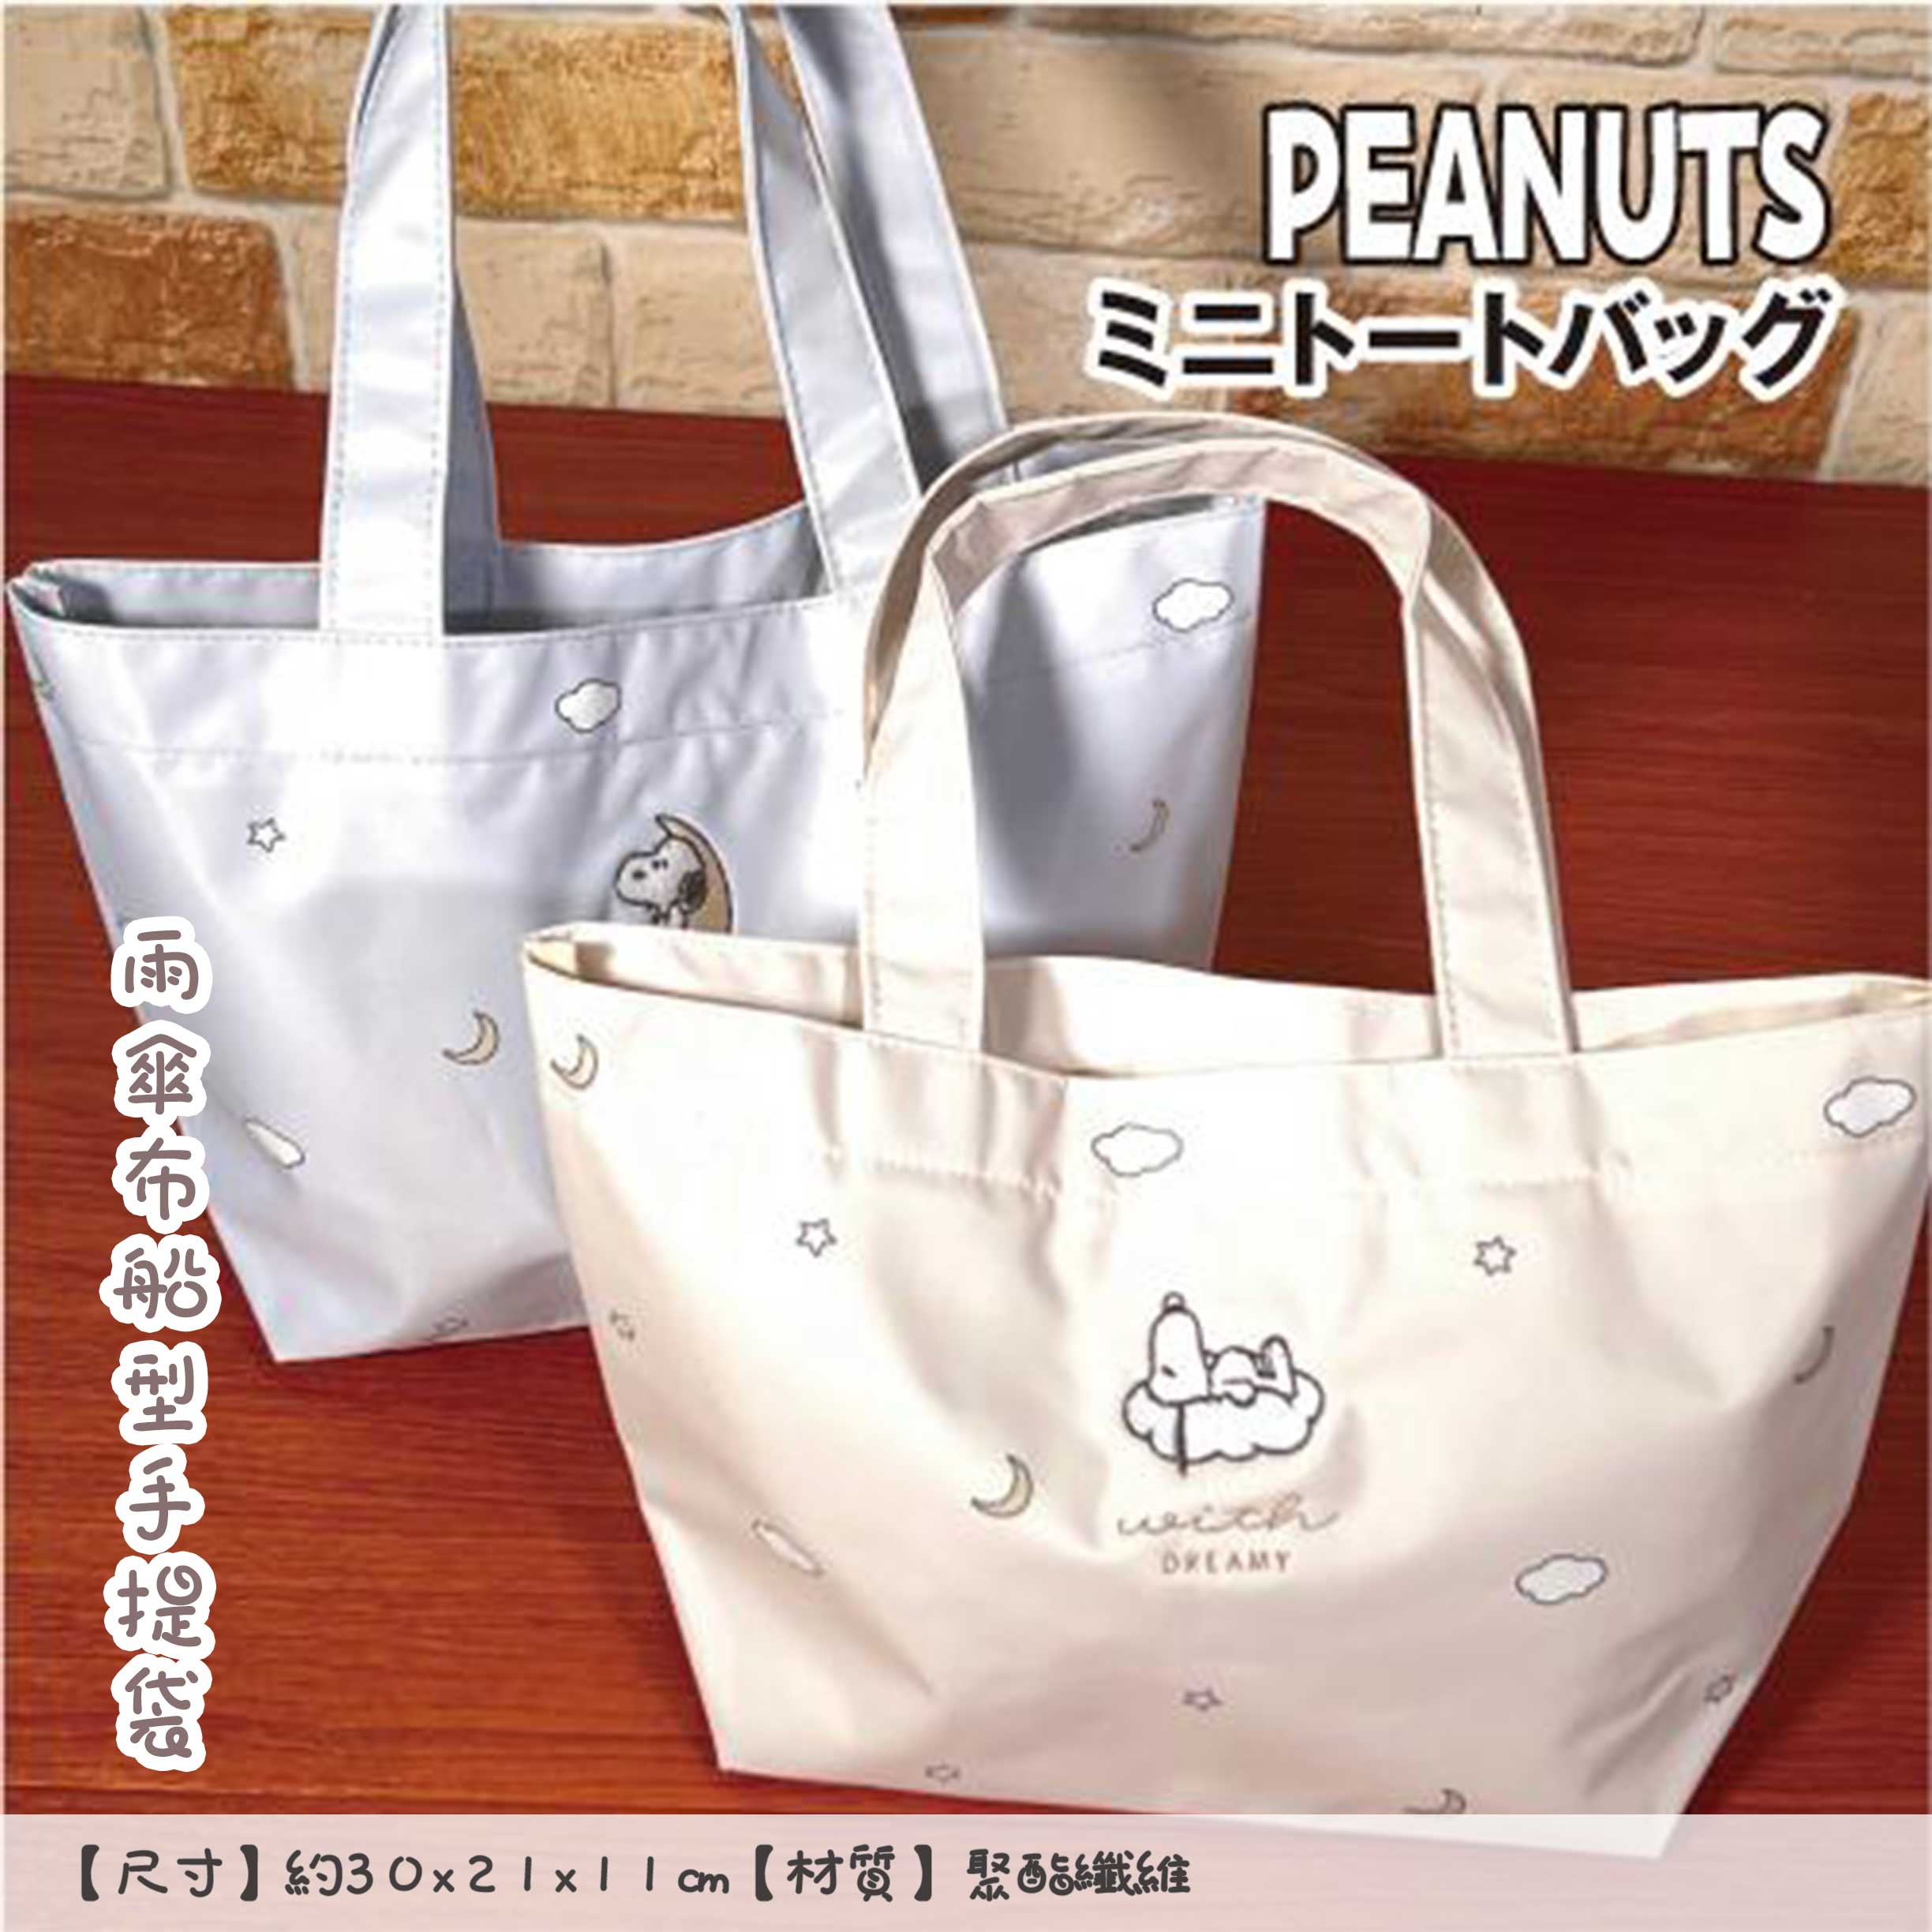 雨傘布船型手提袋-史努比 SNOOPY PEANUTS 日本進口正版授權